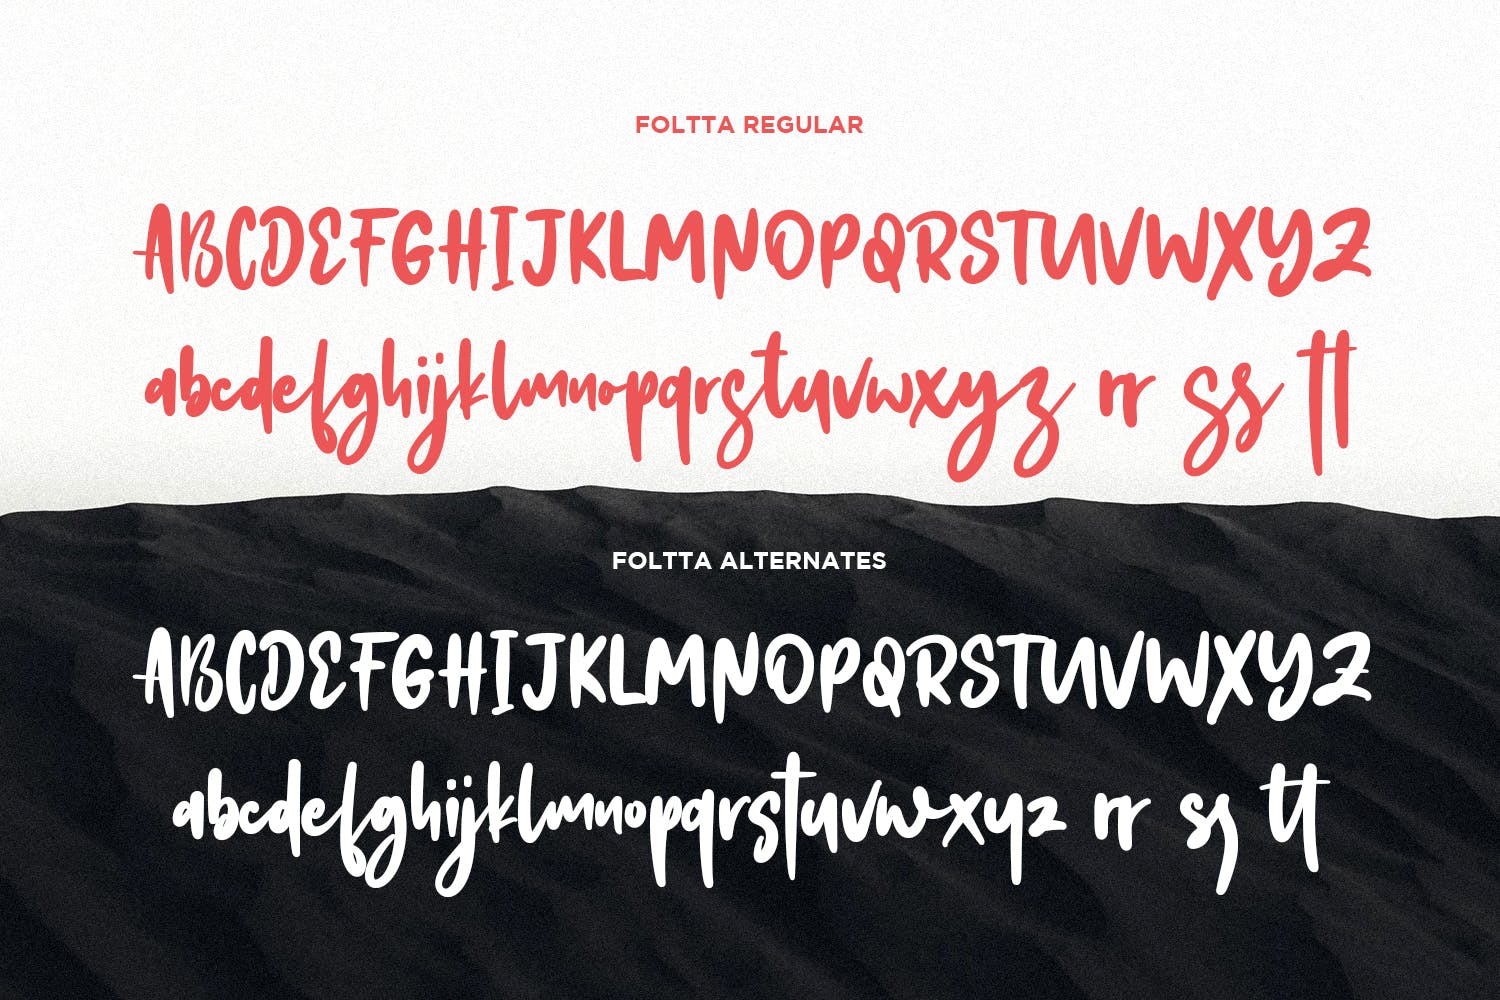 创意手工制作英文书法字体下载 Foltta Typeface插图(9)